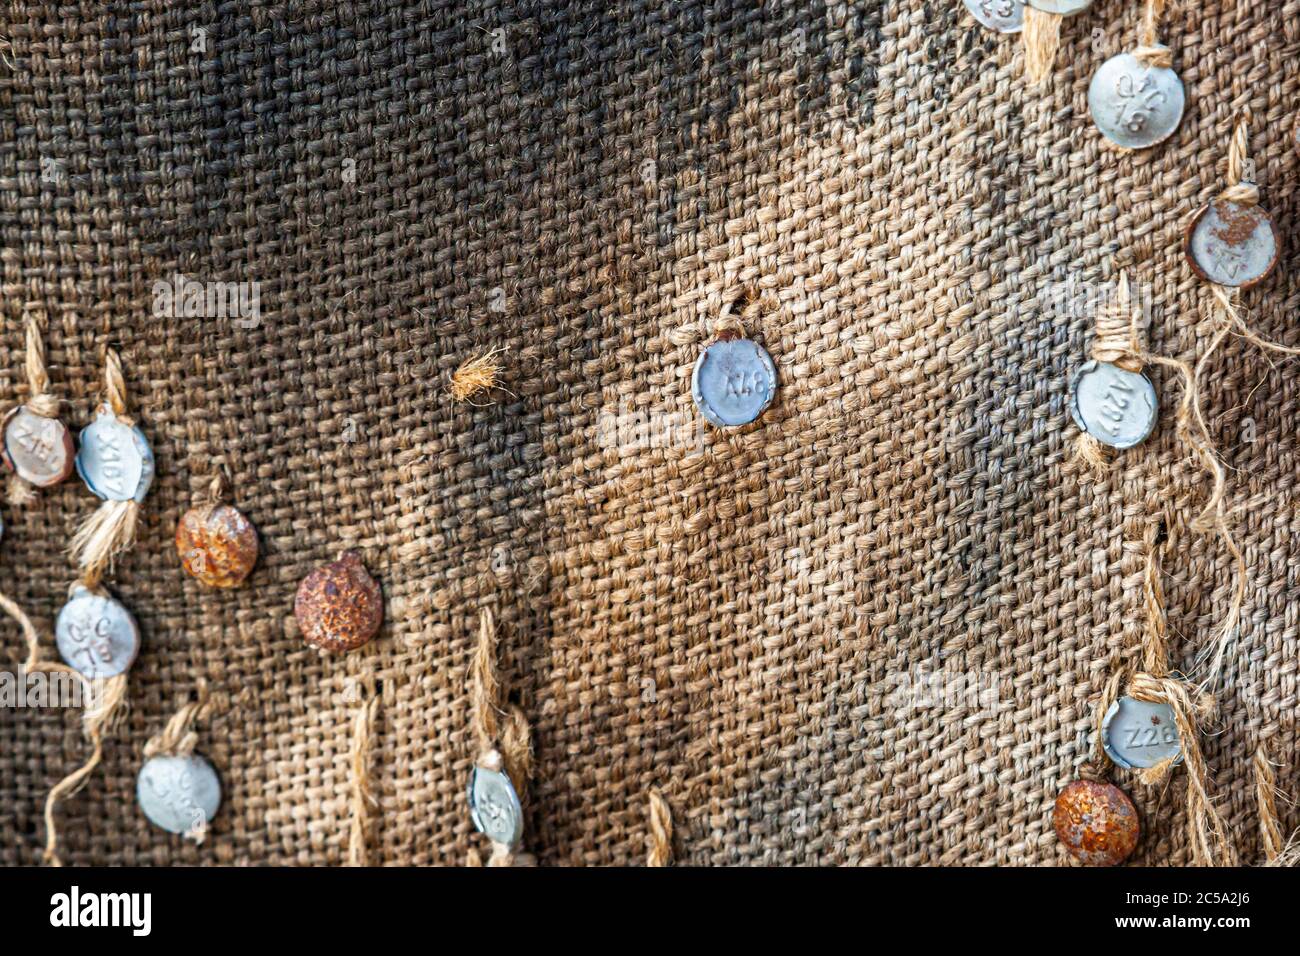 Die Umhüllung der Torwächter mit Jutesäcken durch Ibrahim Mahama aus Ghana. Torwache in Jute Sack, Documenta 14, Kassel, Deutschland Stockfoto